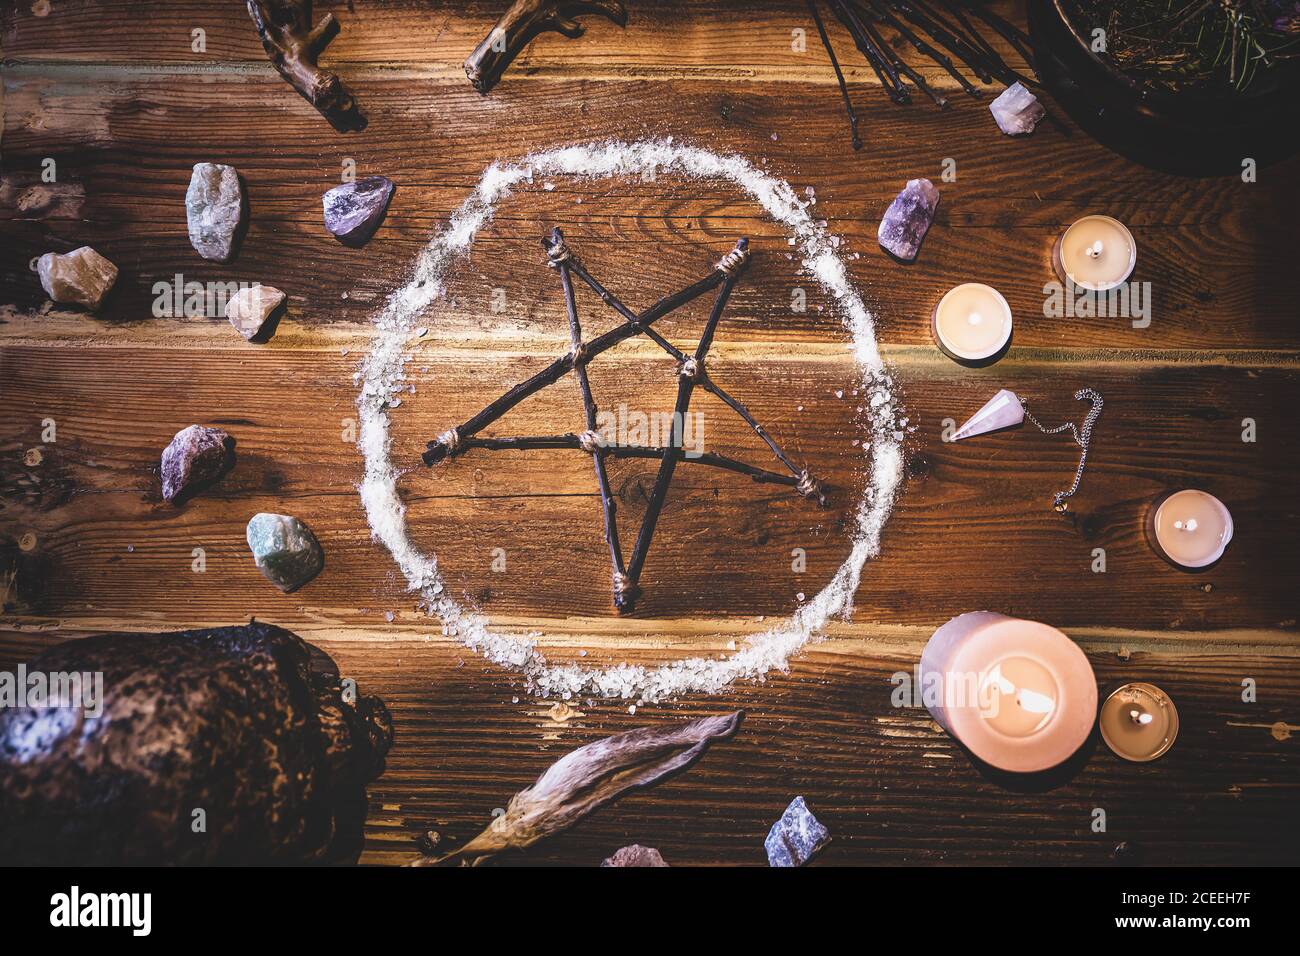 Ingredientes y materiales para un ritual occultly con un pentagrama o pentacle, piedras preciosas, un péndulo y un cráneo humano, flatlay Foto de stock